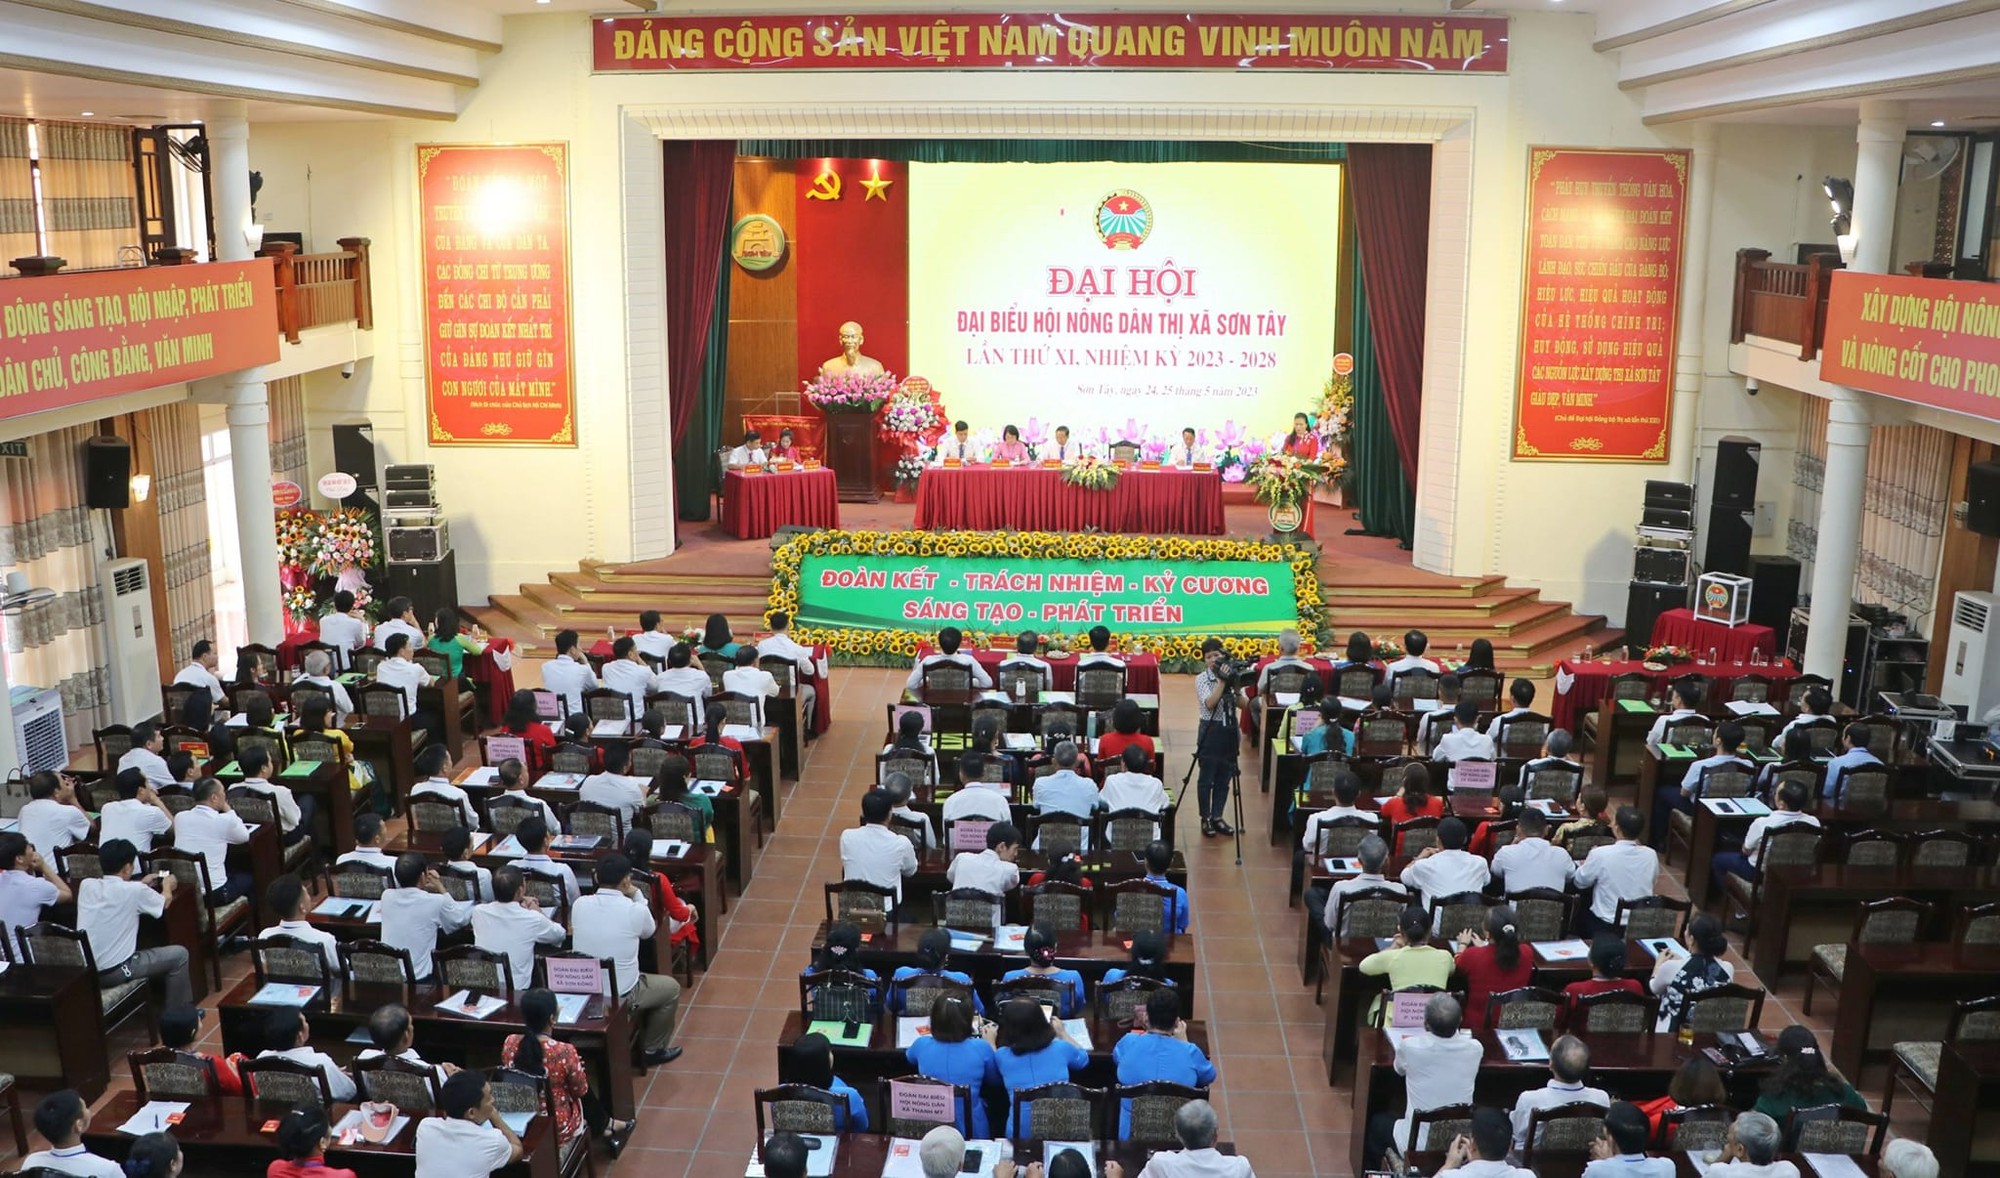 Hà Nội: Đại hội Hội Nông dân thị xã Sơn Tây, ông Khuất Văn Sỹ được bầu giữ chức Chủ tịch Hội Nông dân - Ảnh 2.